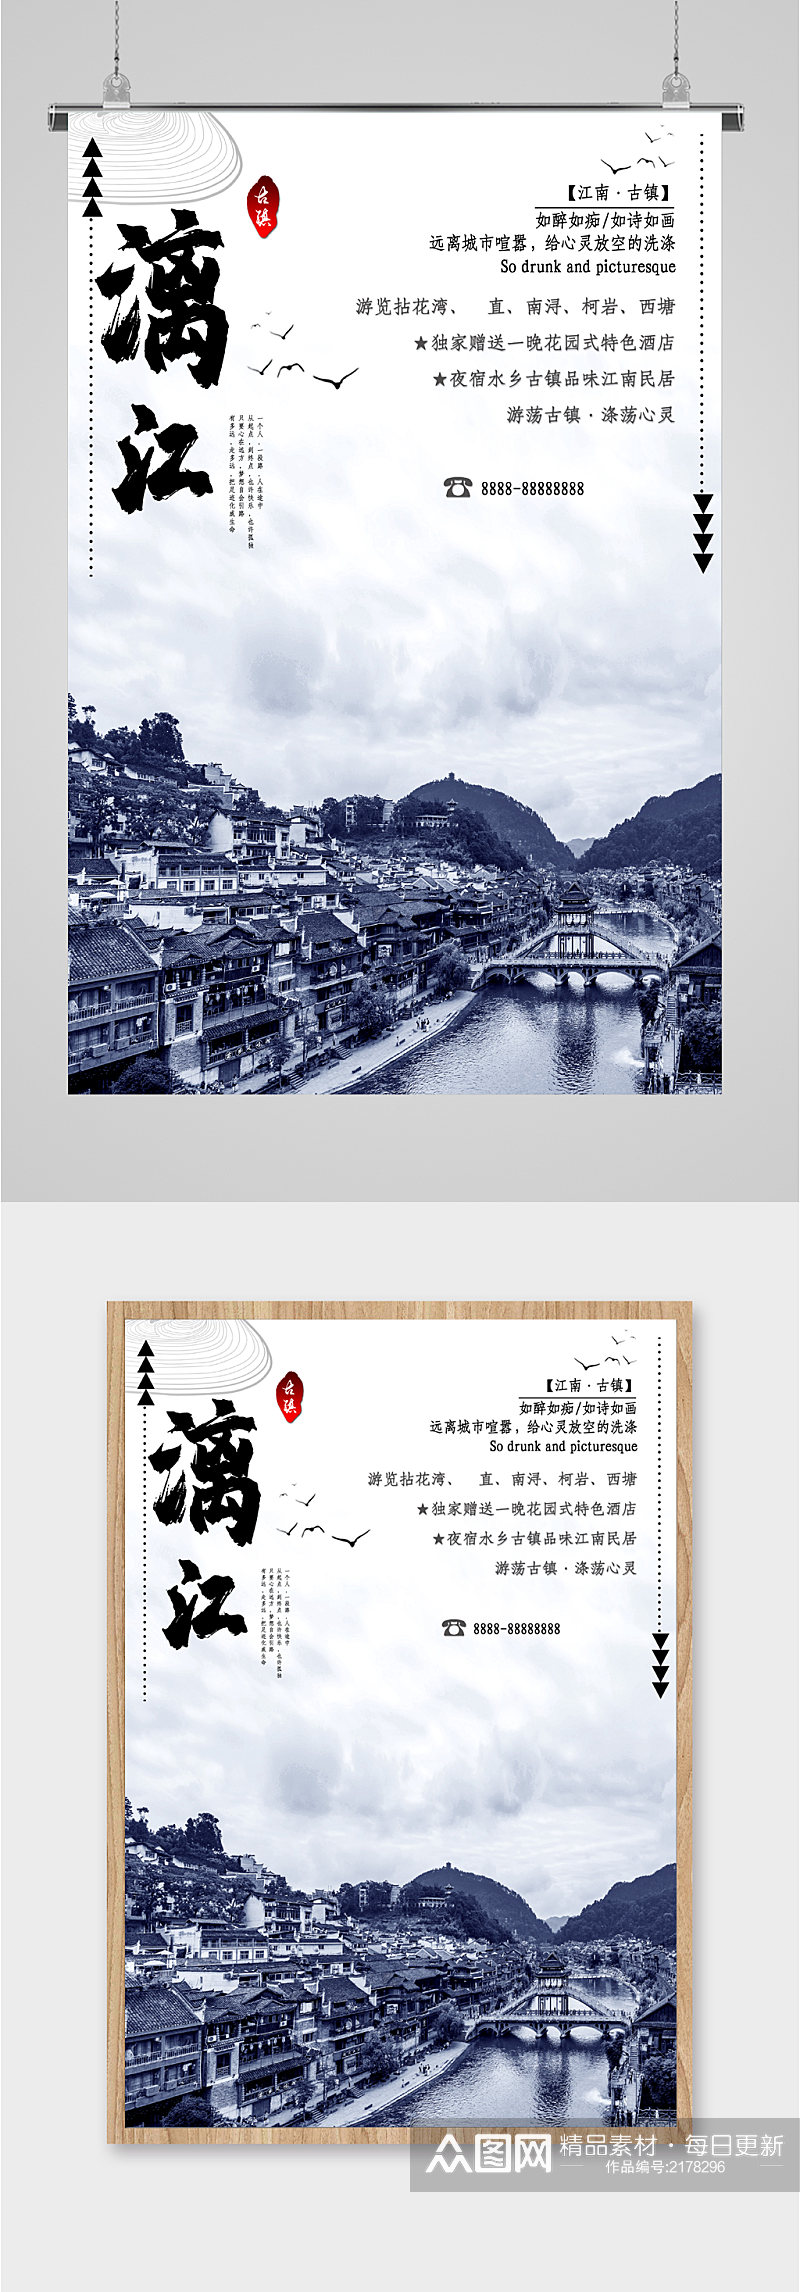 漓江旅游景色海报素材